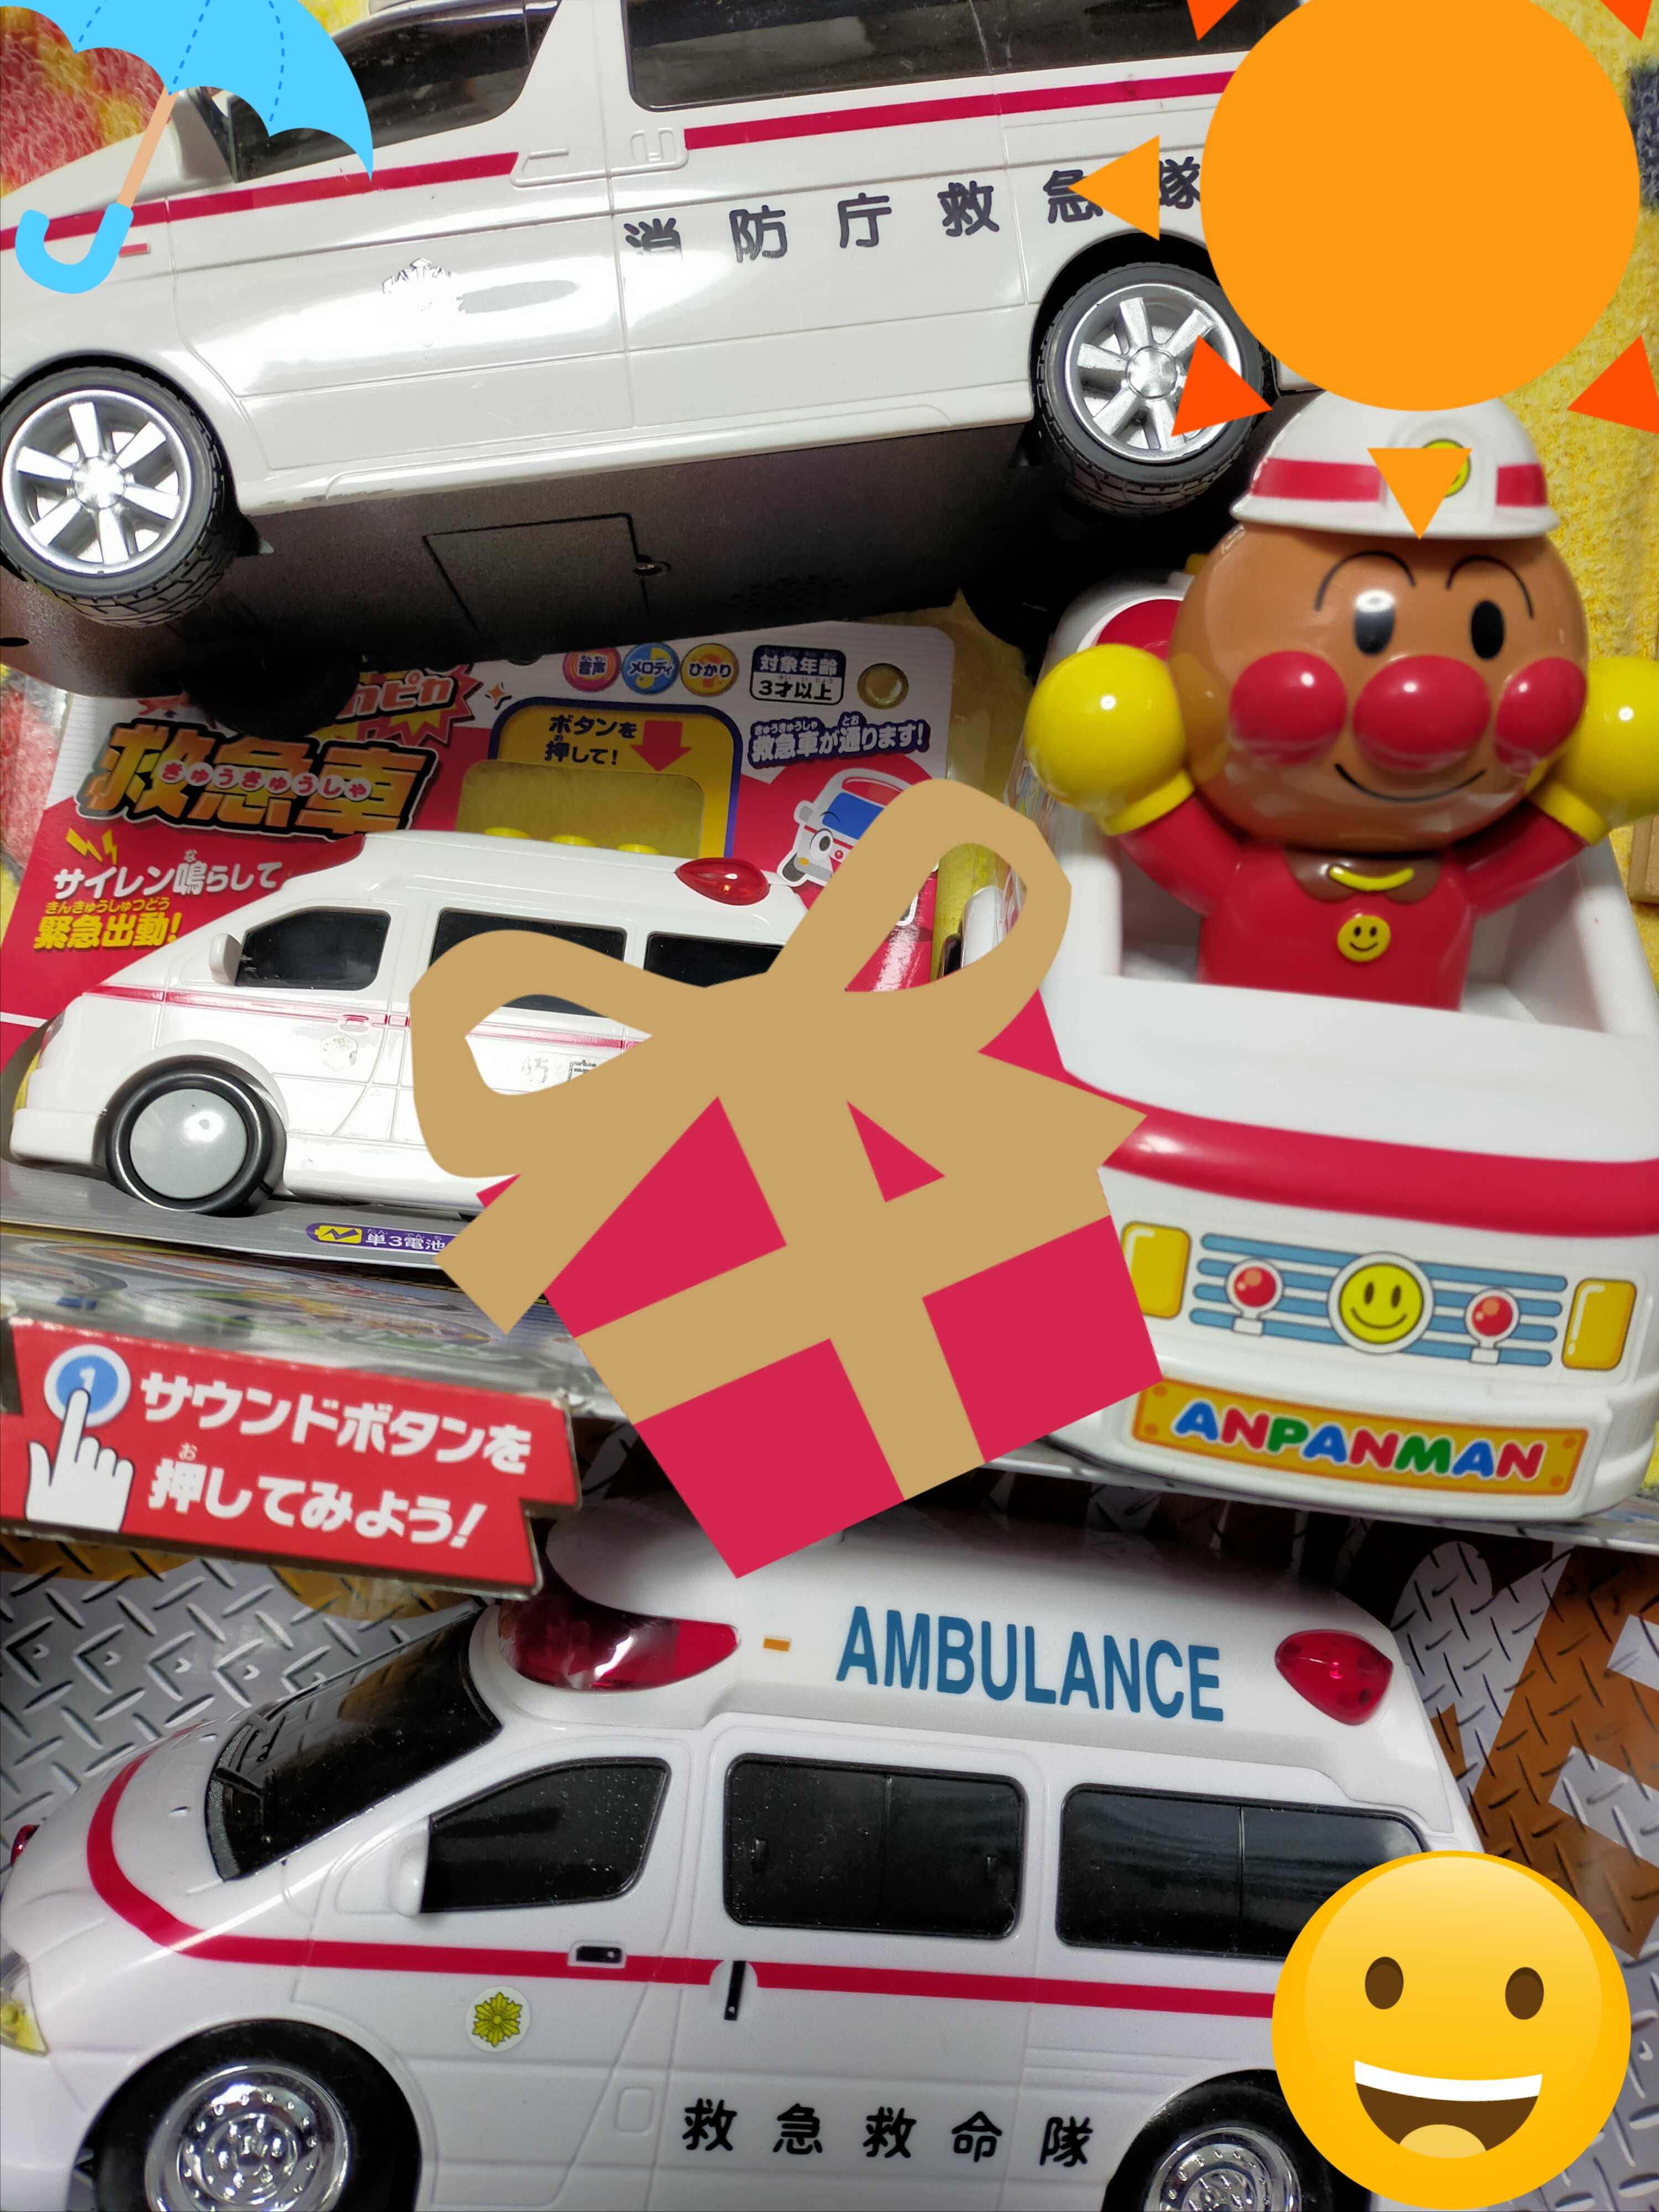 自動車おもちゃ]の記事一覧 鉄道・自動車の模型、おもちゃのブログ 楽天ブログ